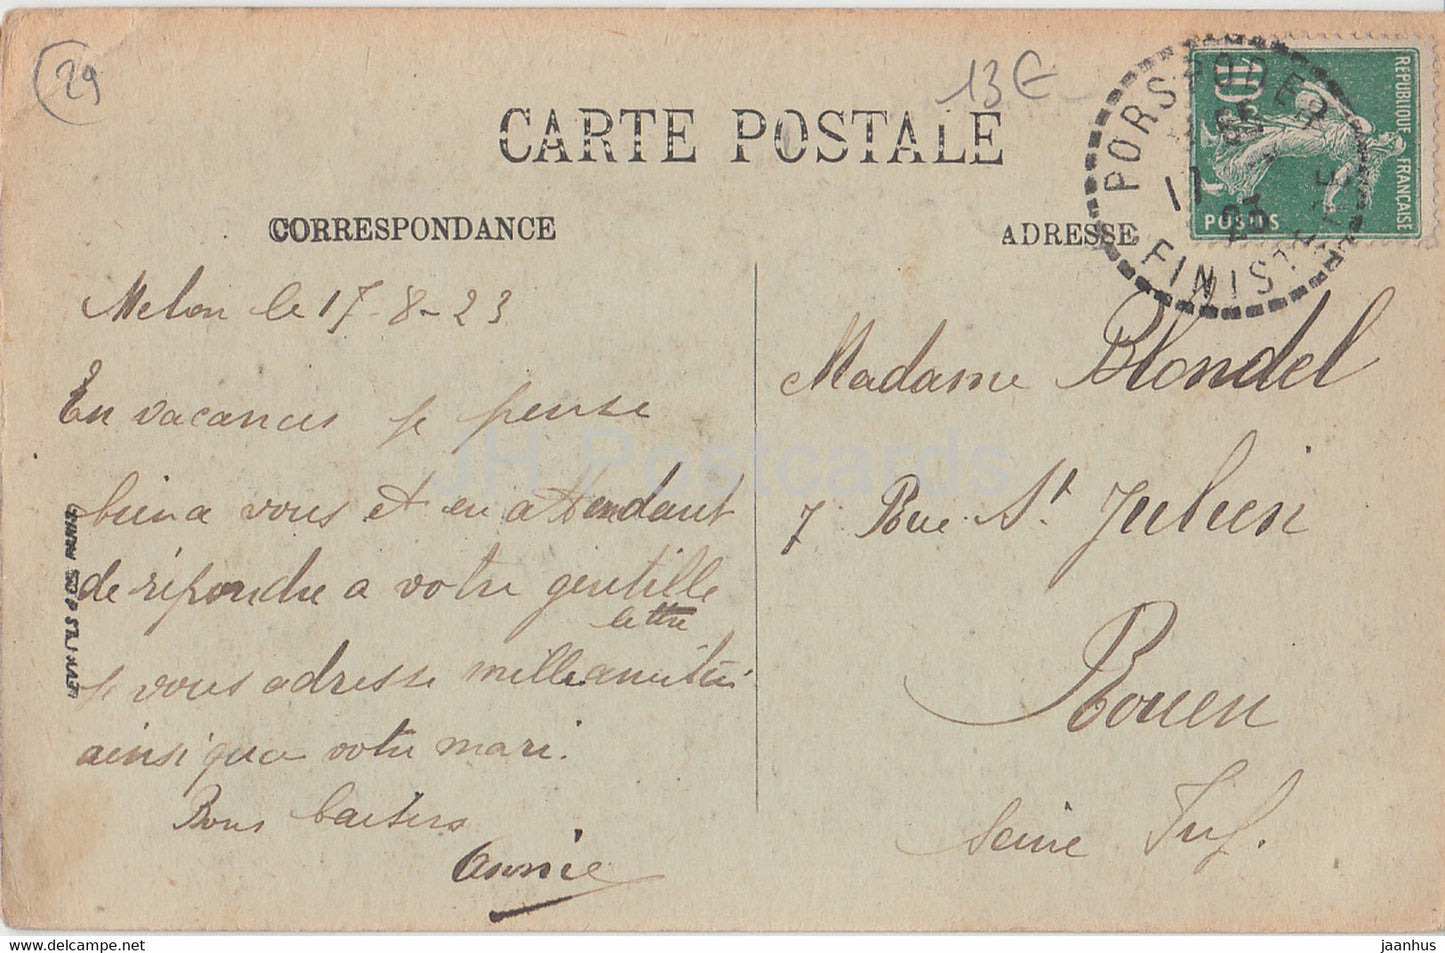 Ile Melon - Le Menhir et les Alignements - LP Brest - carte postale ancienne - 1923 - France - occasion